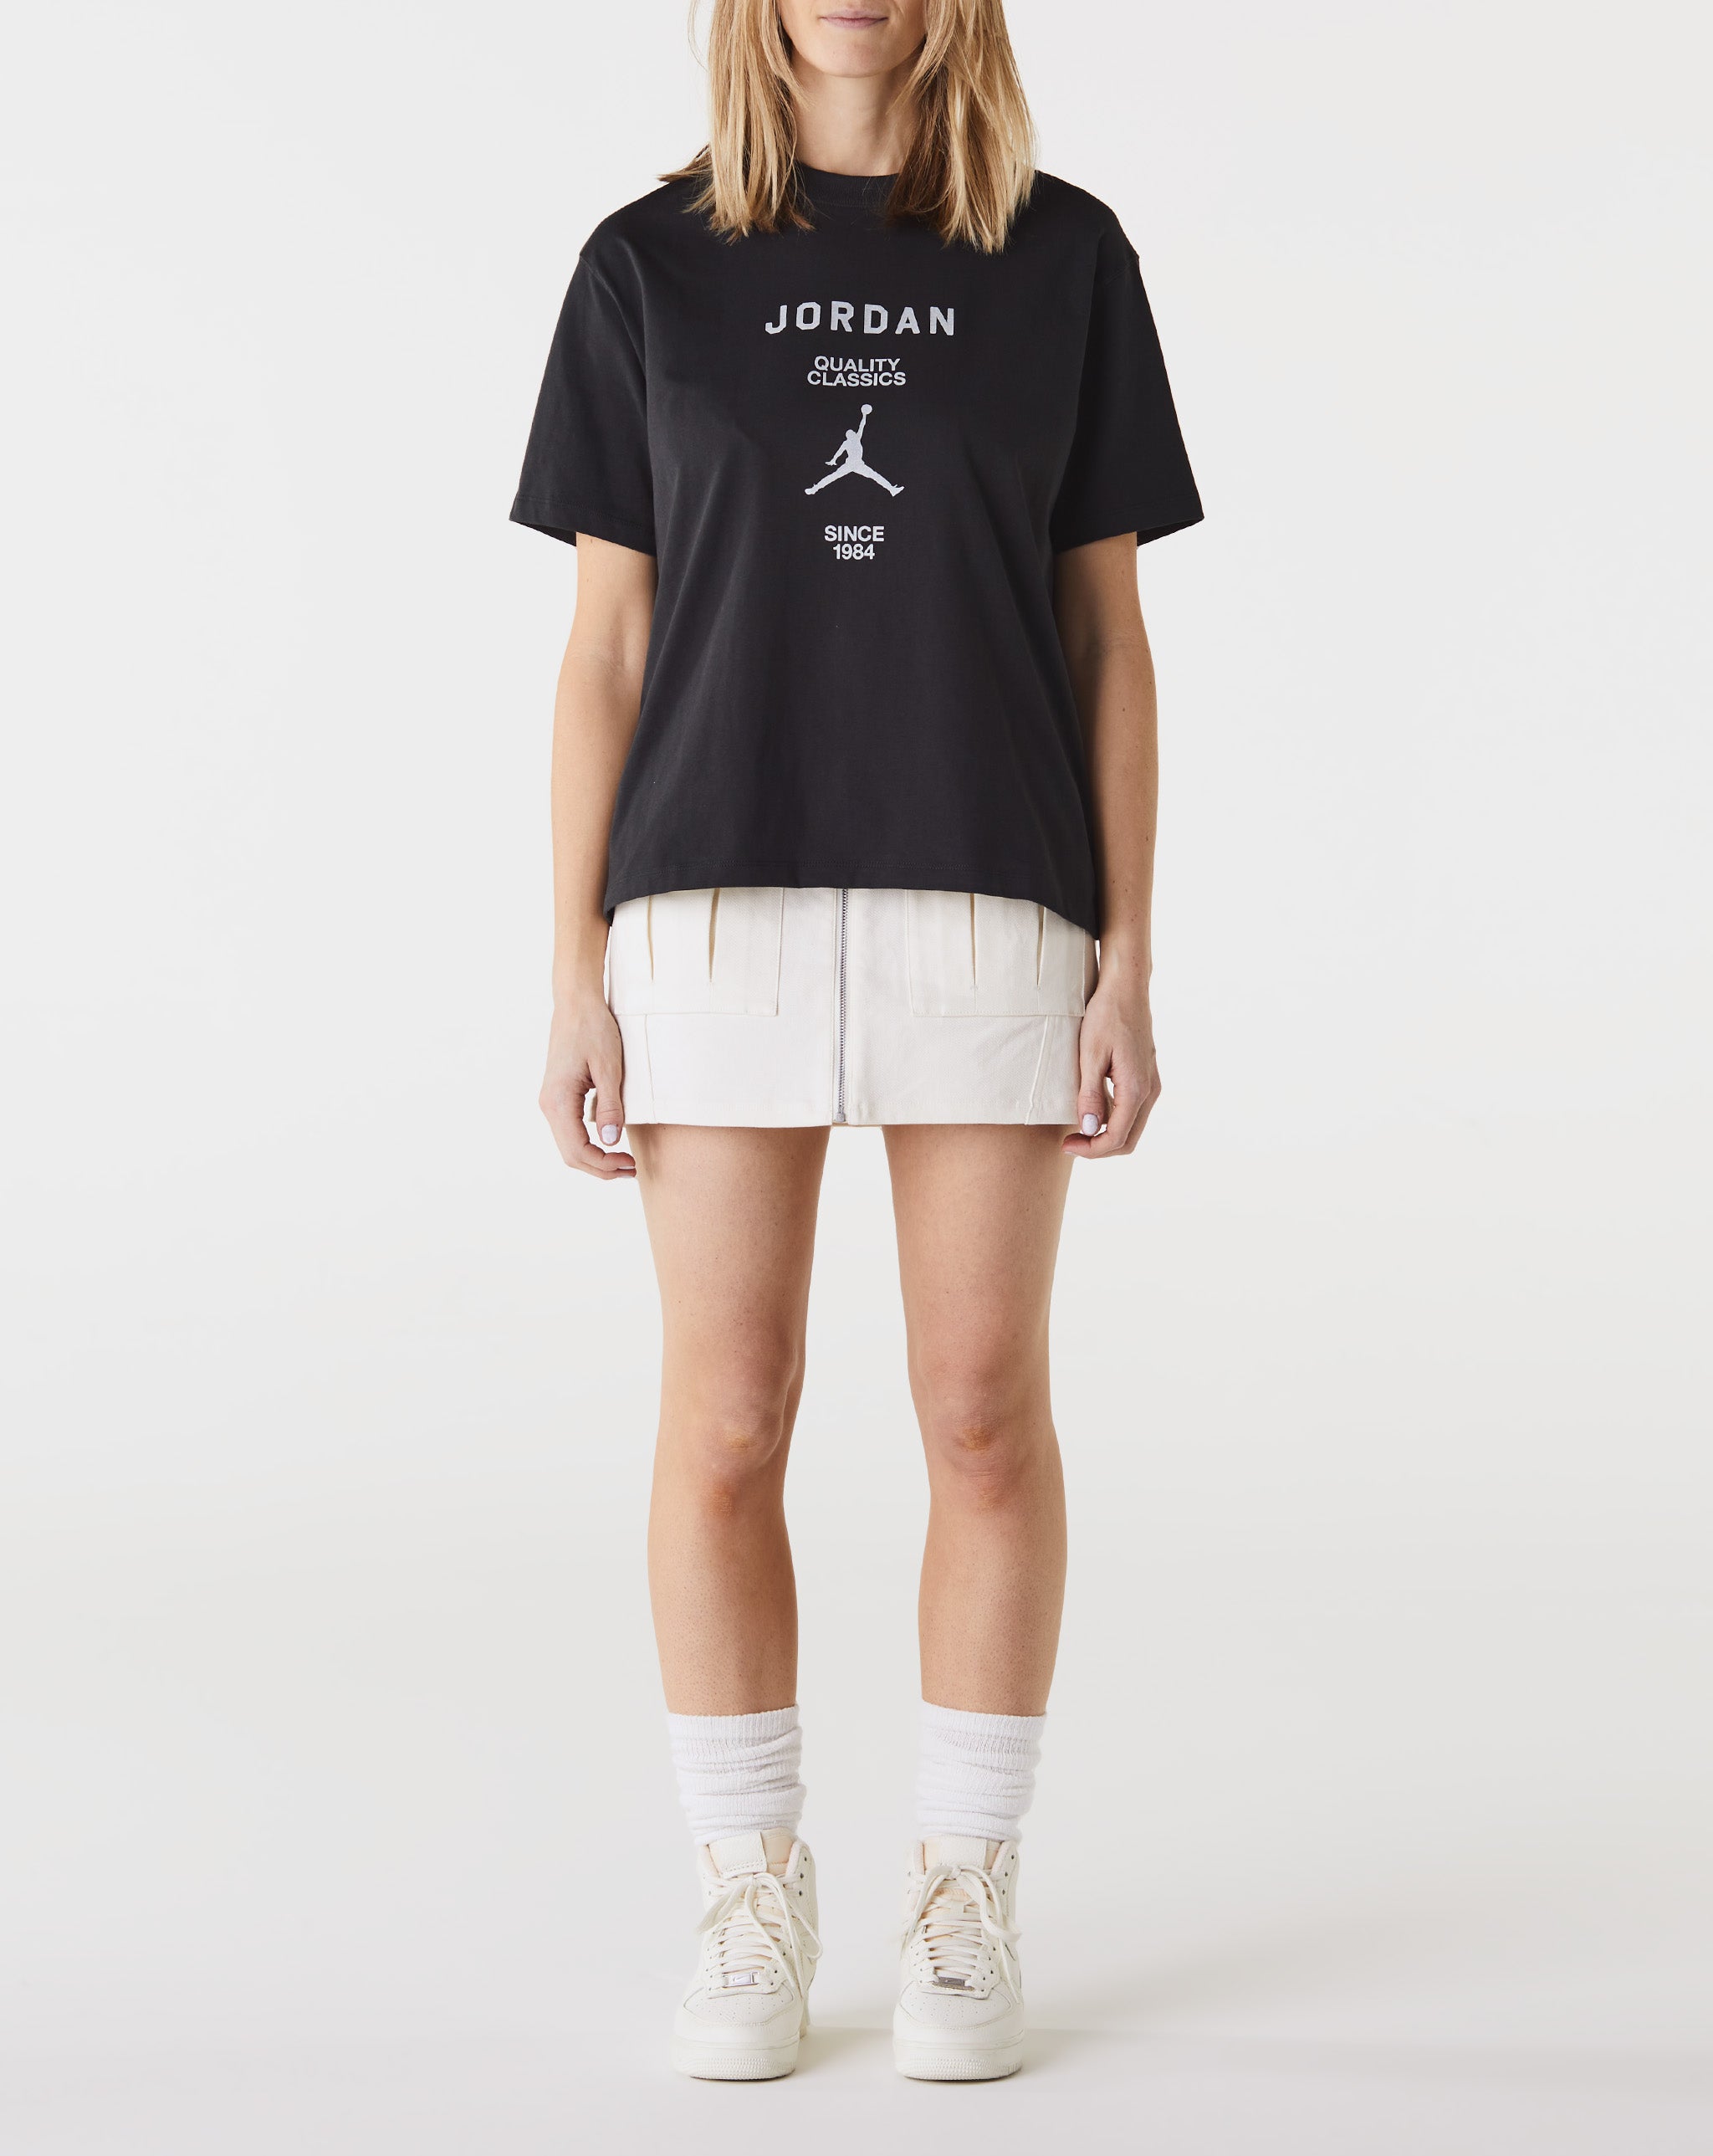 Air Jordan Women's Jordan Quality Classics T-Shirt - Rule of Next Apparel